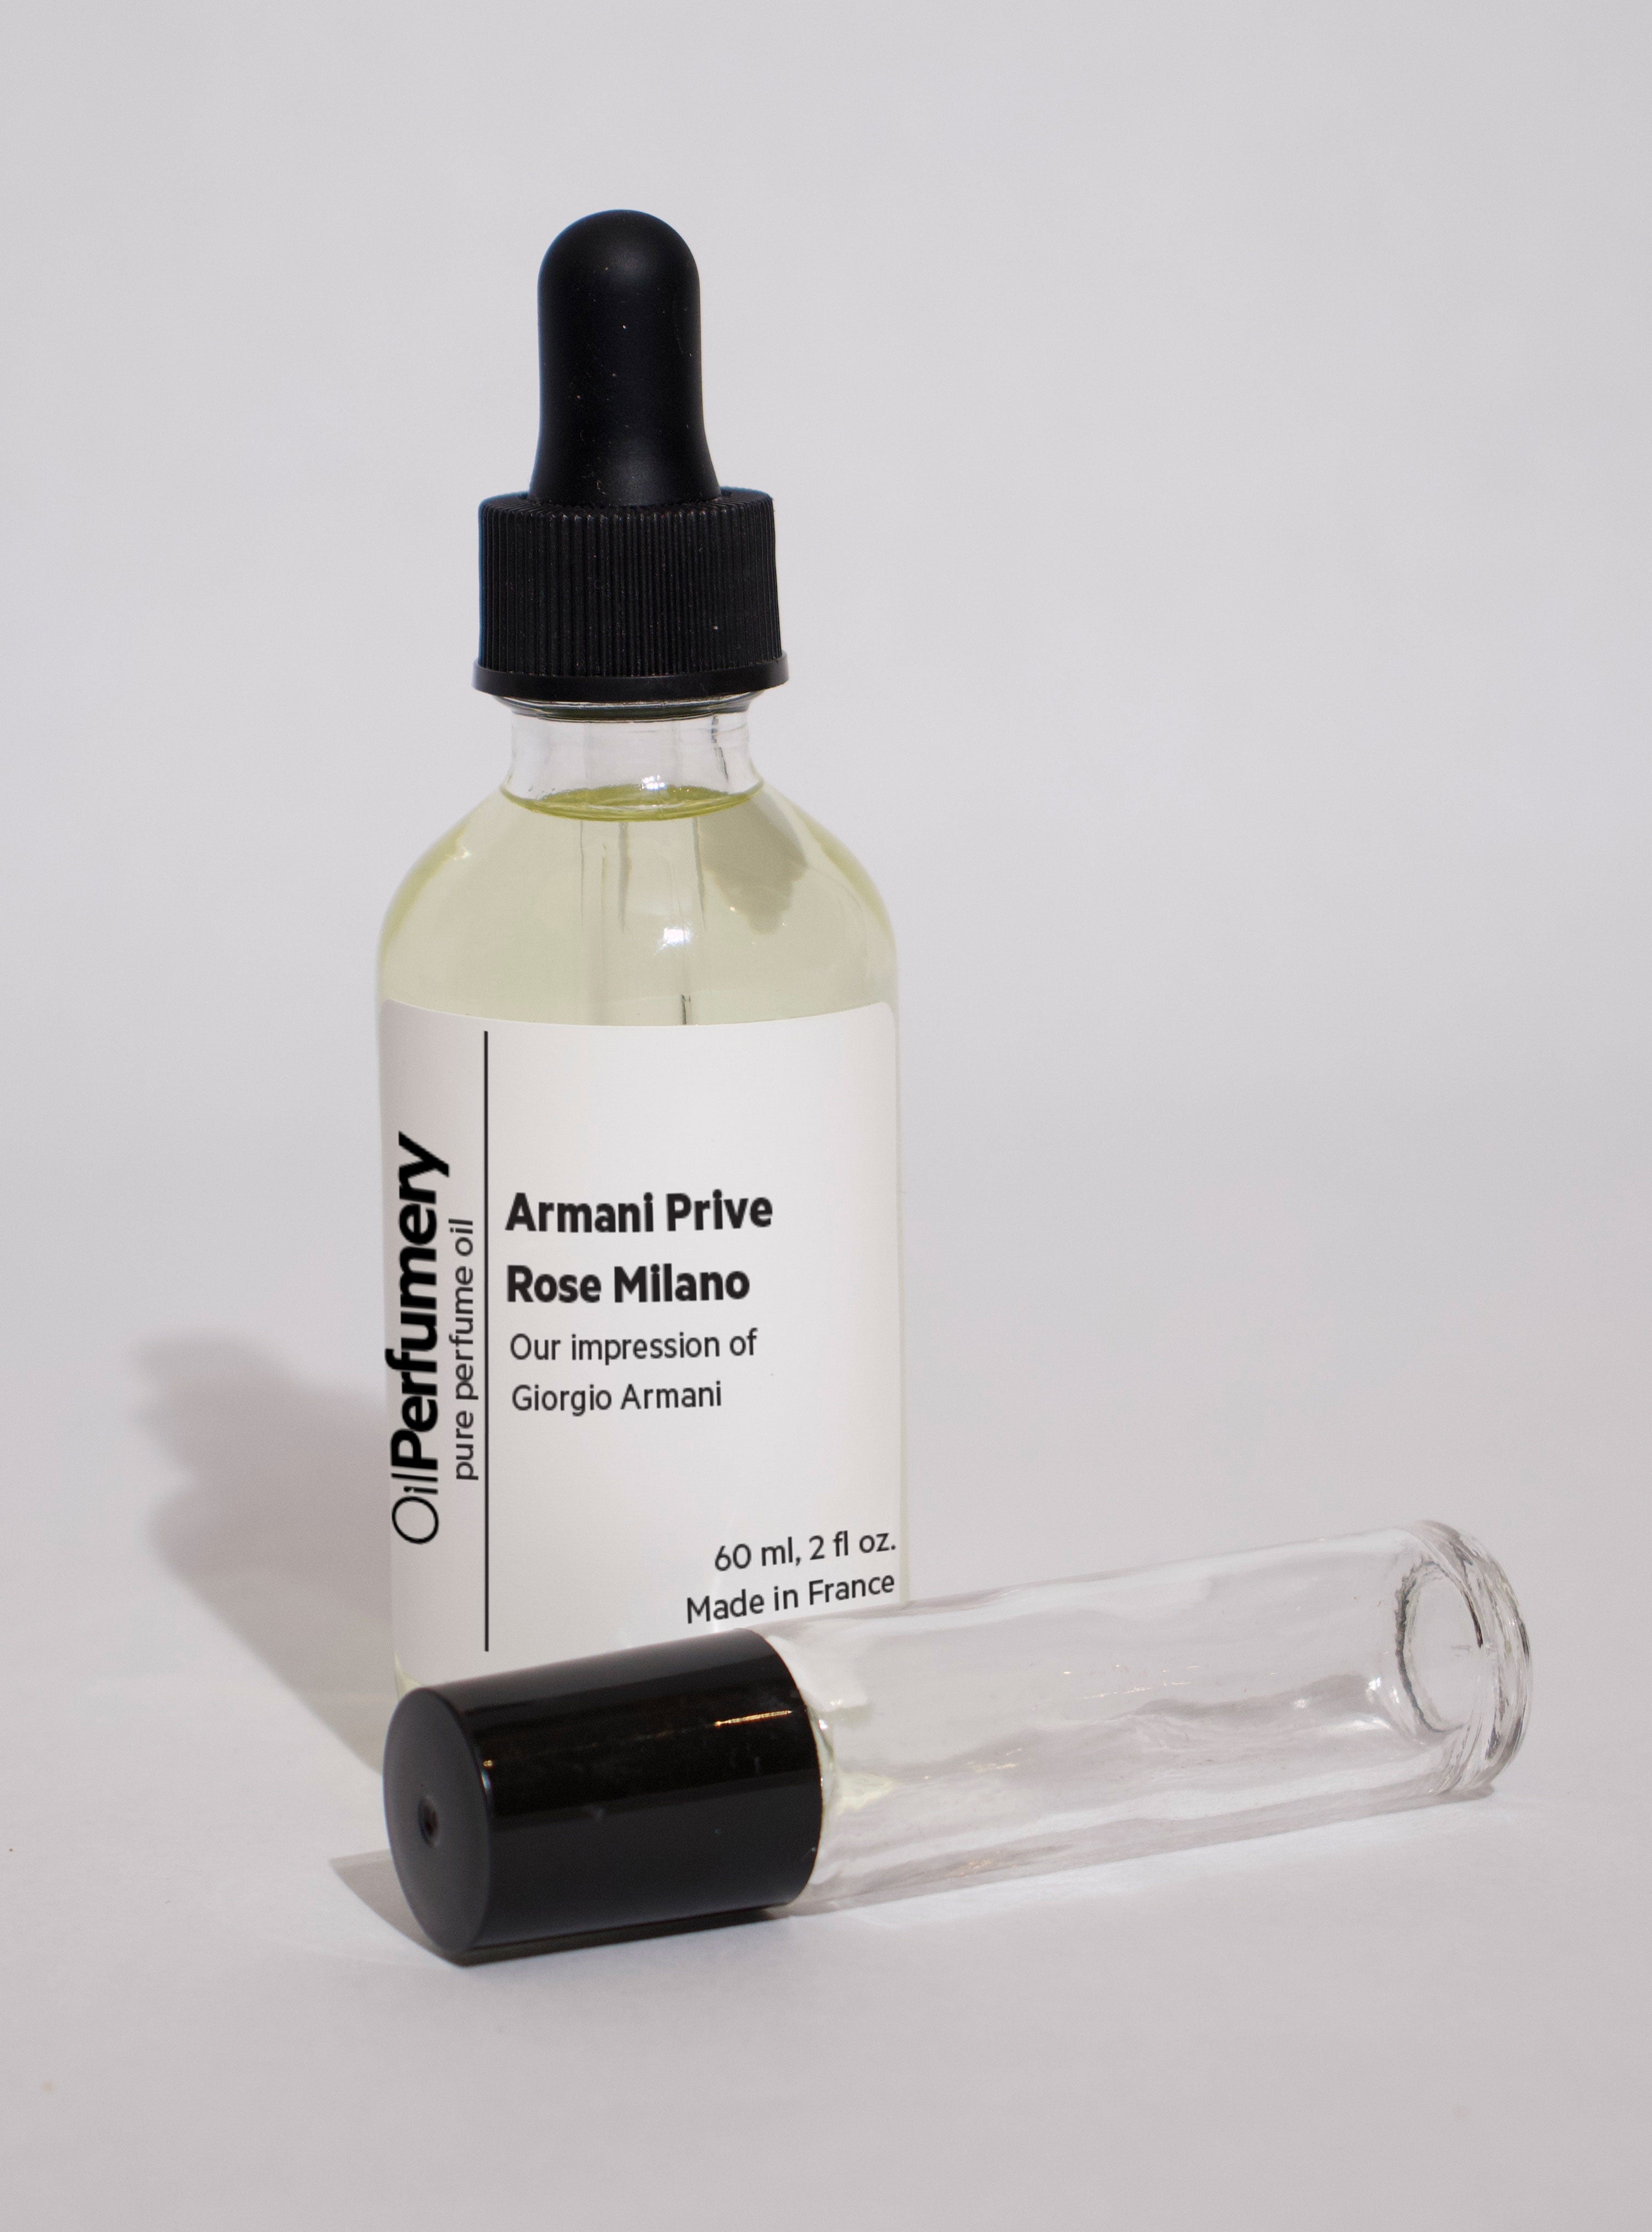 Oil Perfumery Impression of Giorgio Armani - Armani Prive Rose Milano